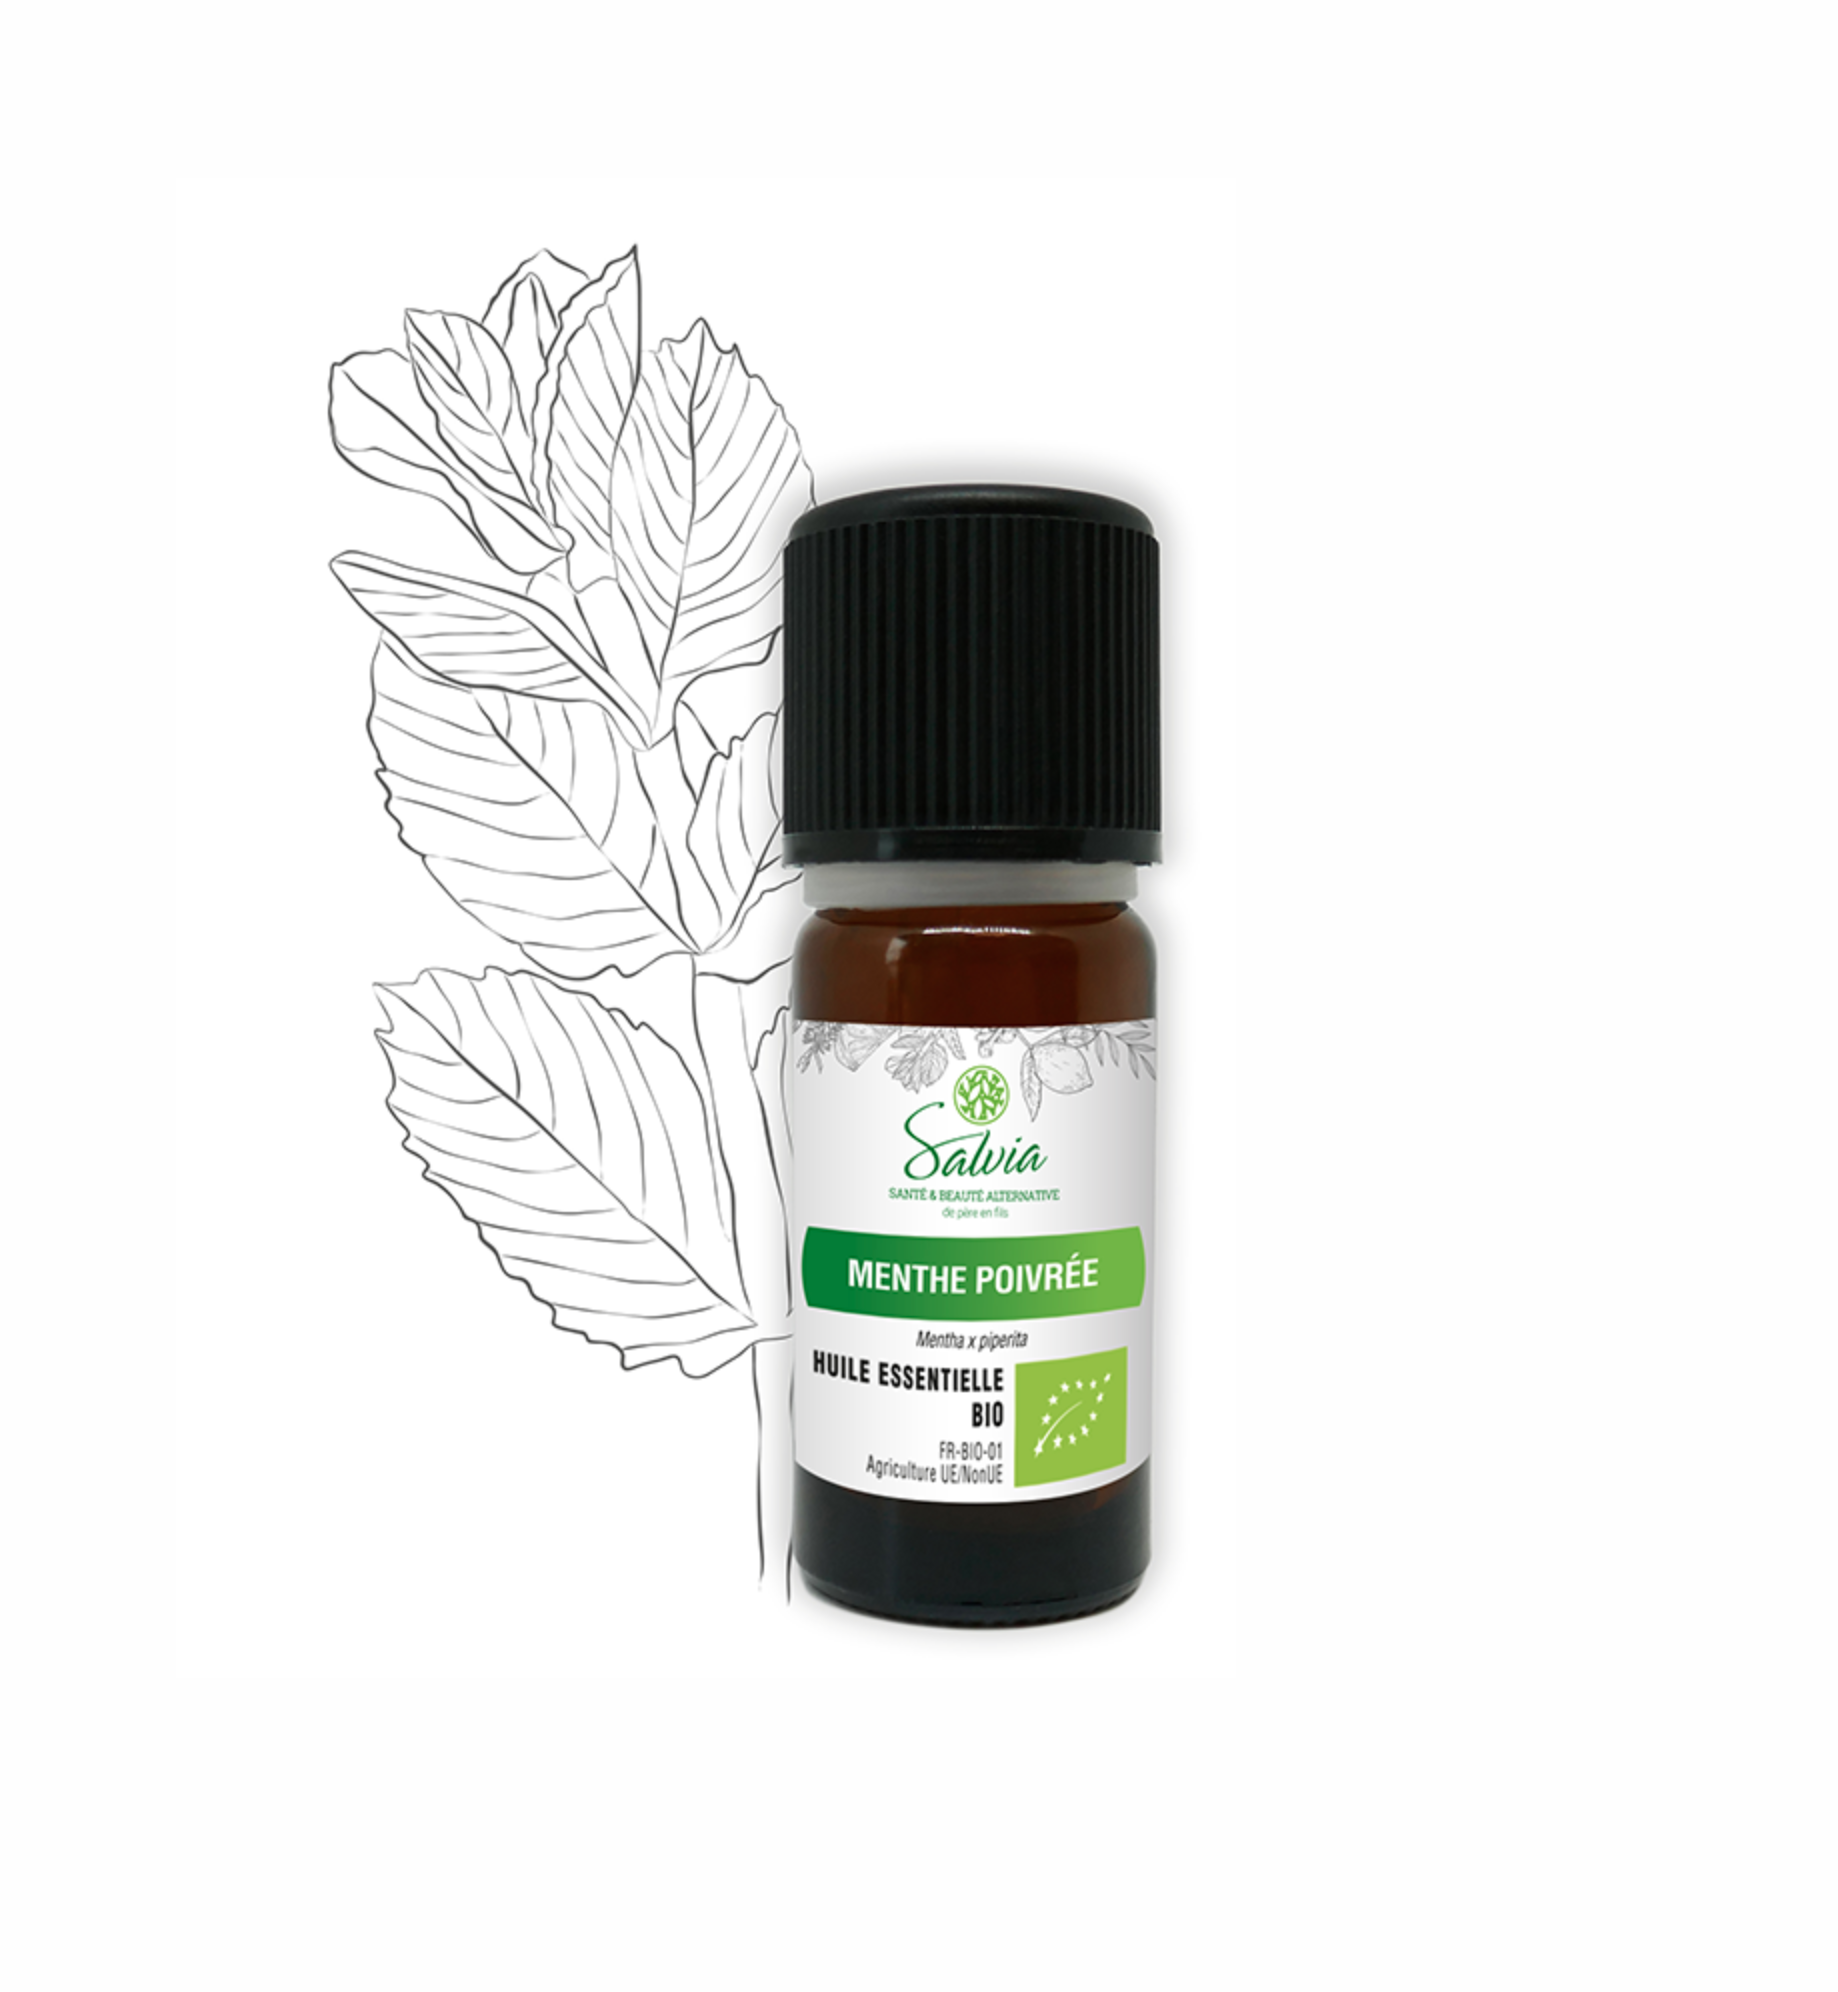 Gm Huile essentielle de menthe poivrée, huile de massage aromathérapie ---  10ml - Prix pas cher